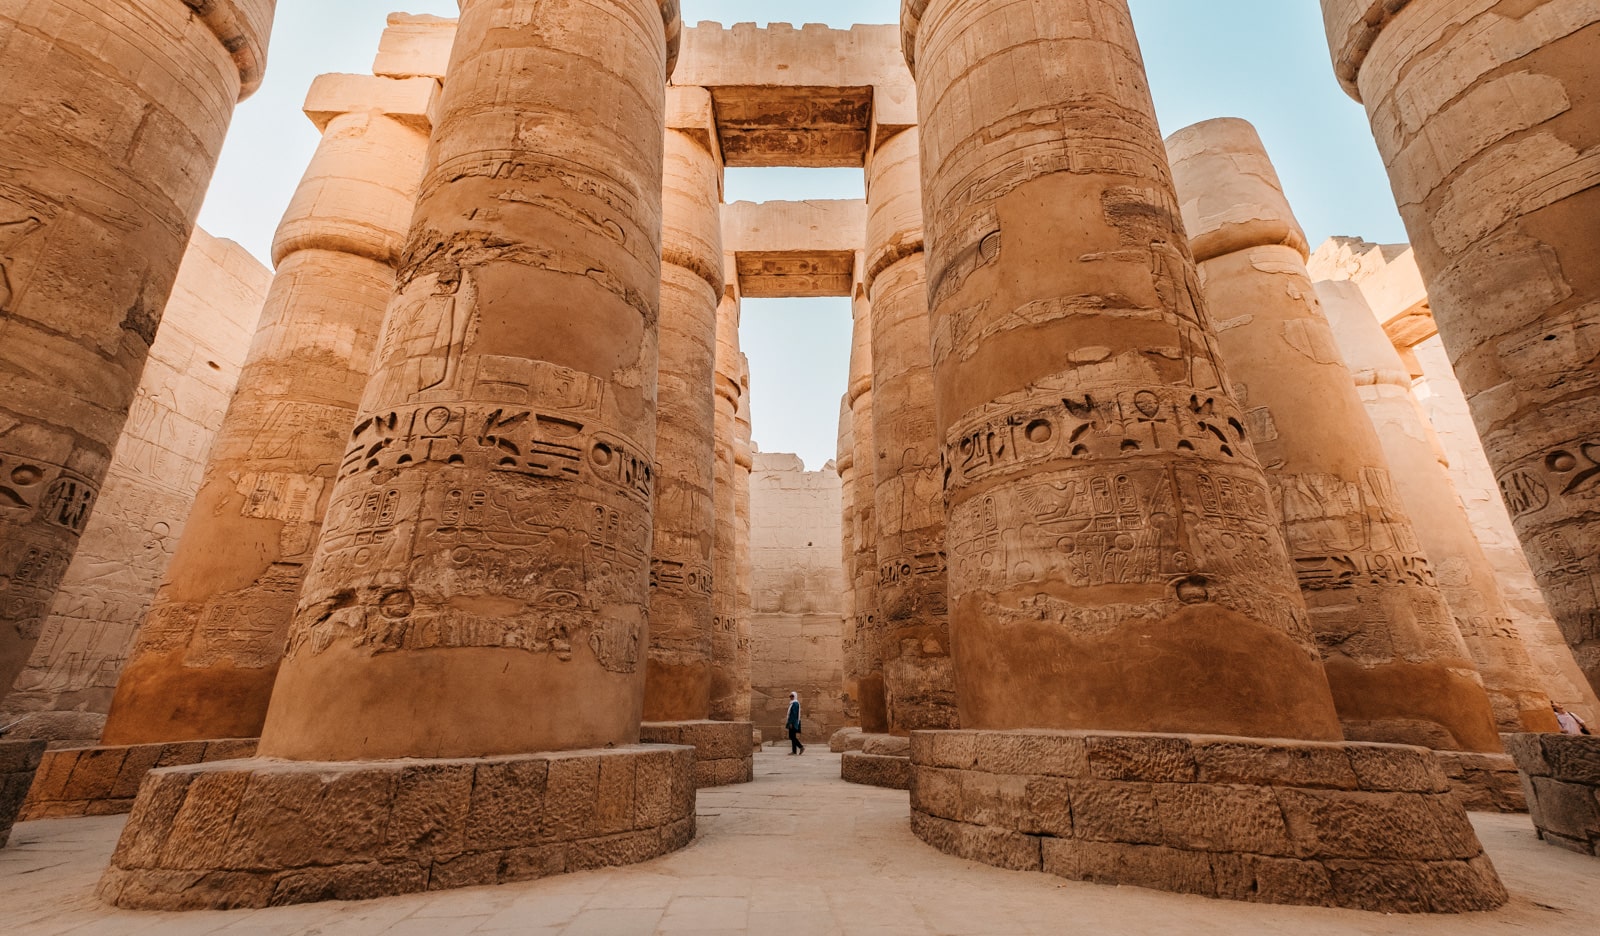 Colunas enormes perto das pirâmides do Egito